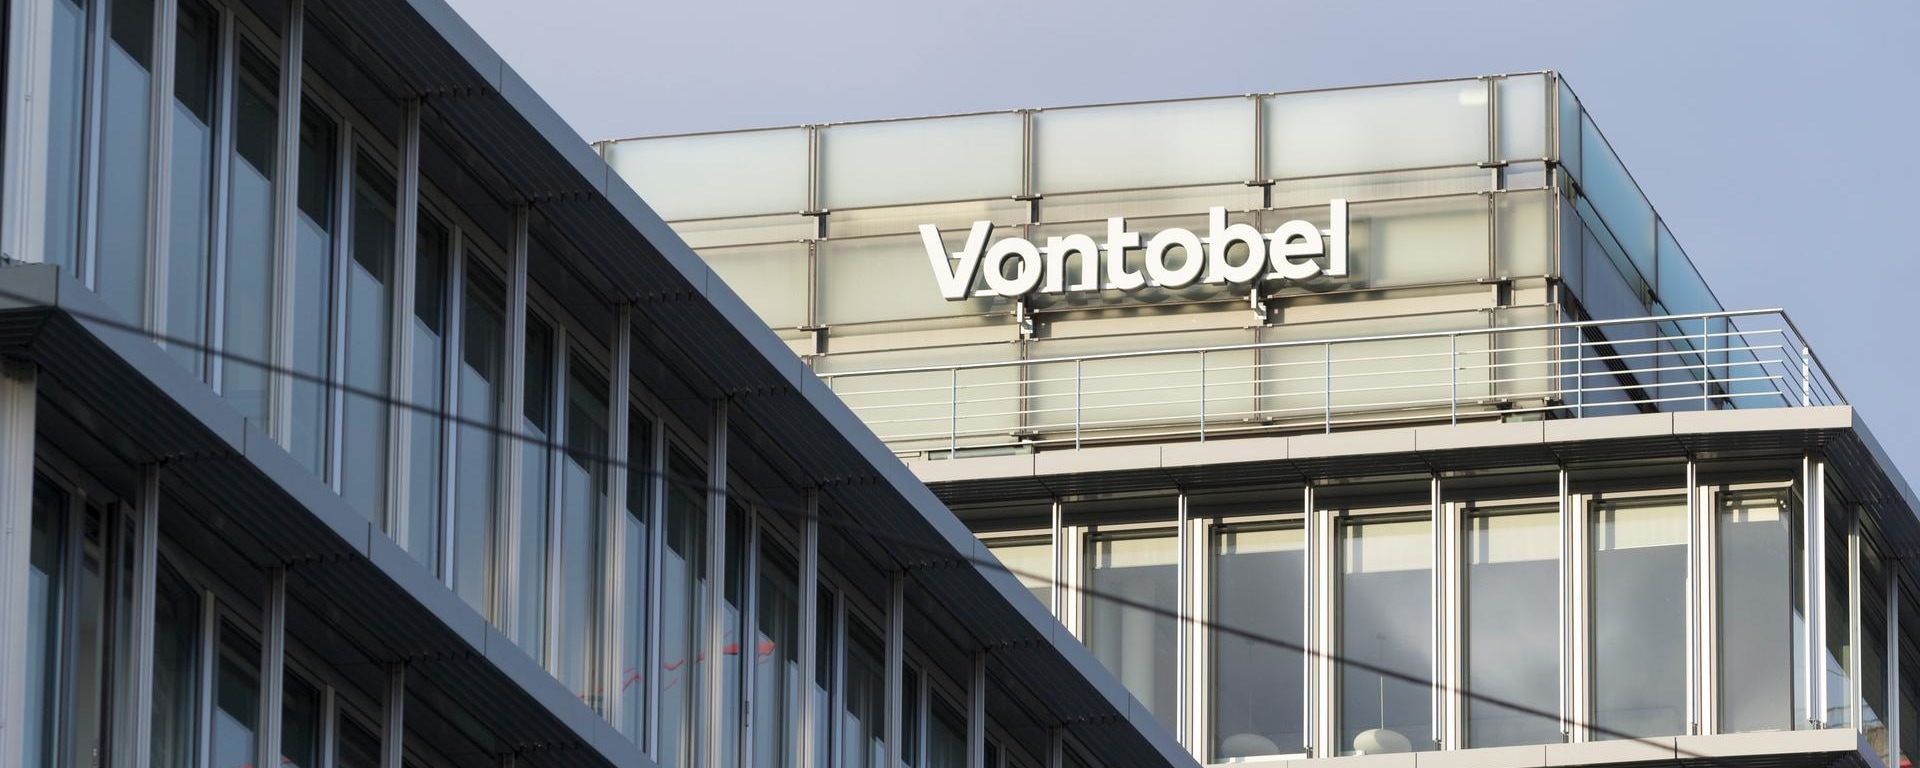 Der Hauptsitz der Bank Vontobel in Zürich, Schweiz.